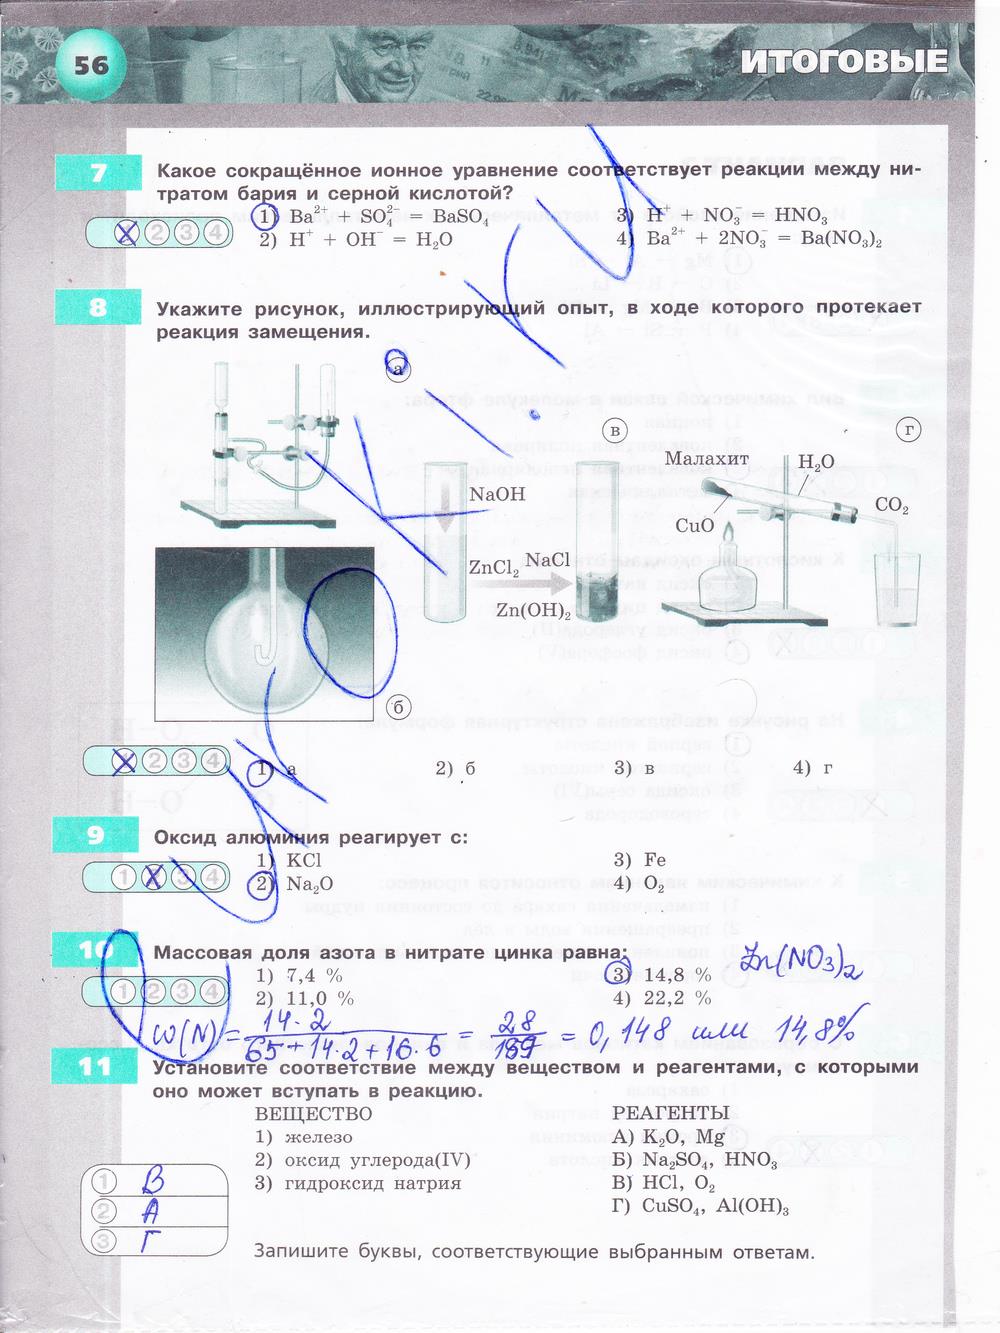 гдз 9 класс тетрадь-экзаменатор страница 56 химия Бобылева, Бирюлина